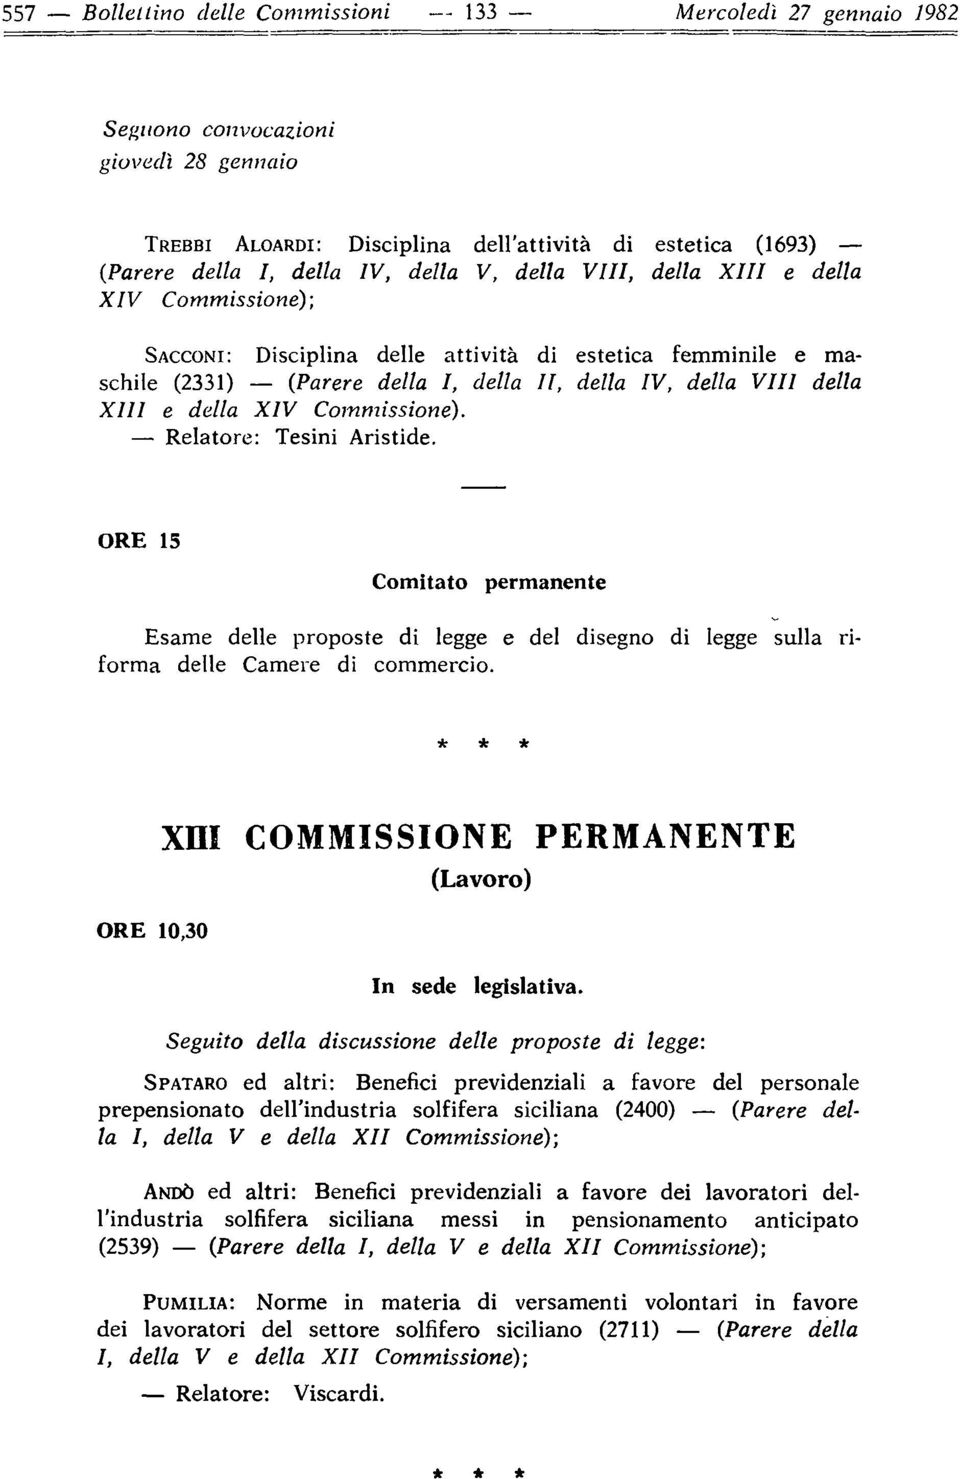 della XIV Commissione). - Relatore: Tesini Aristide. ORE 15 Comitato permanente. Esame delle proposte di legge e del disegno di legge sulla riforma delle Camere di commercio.